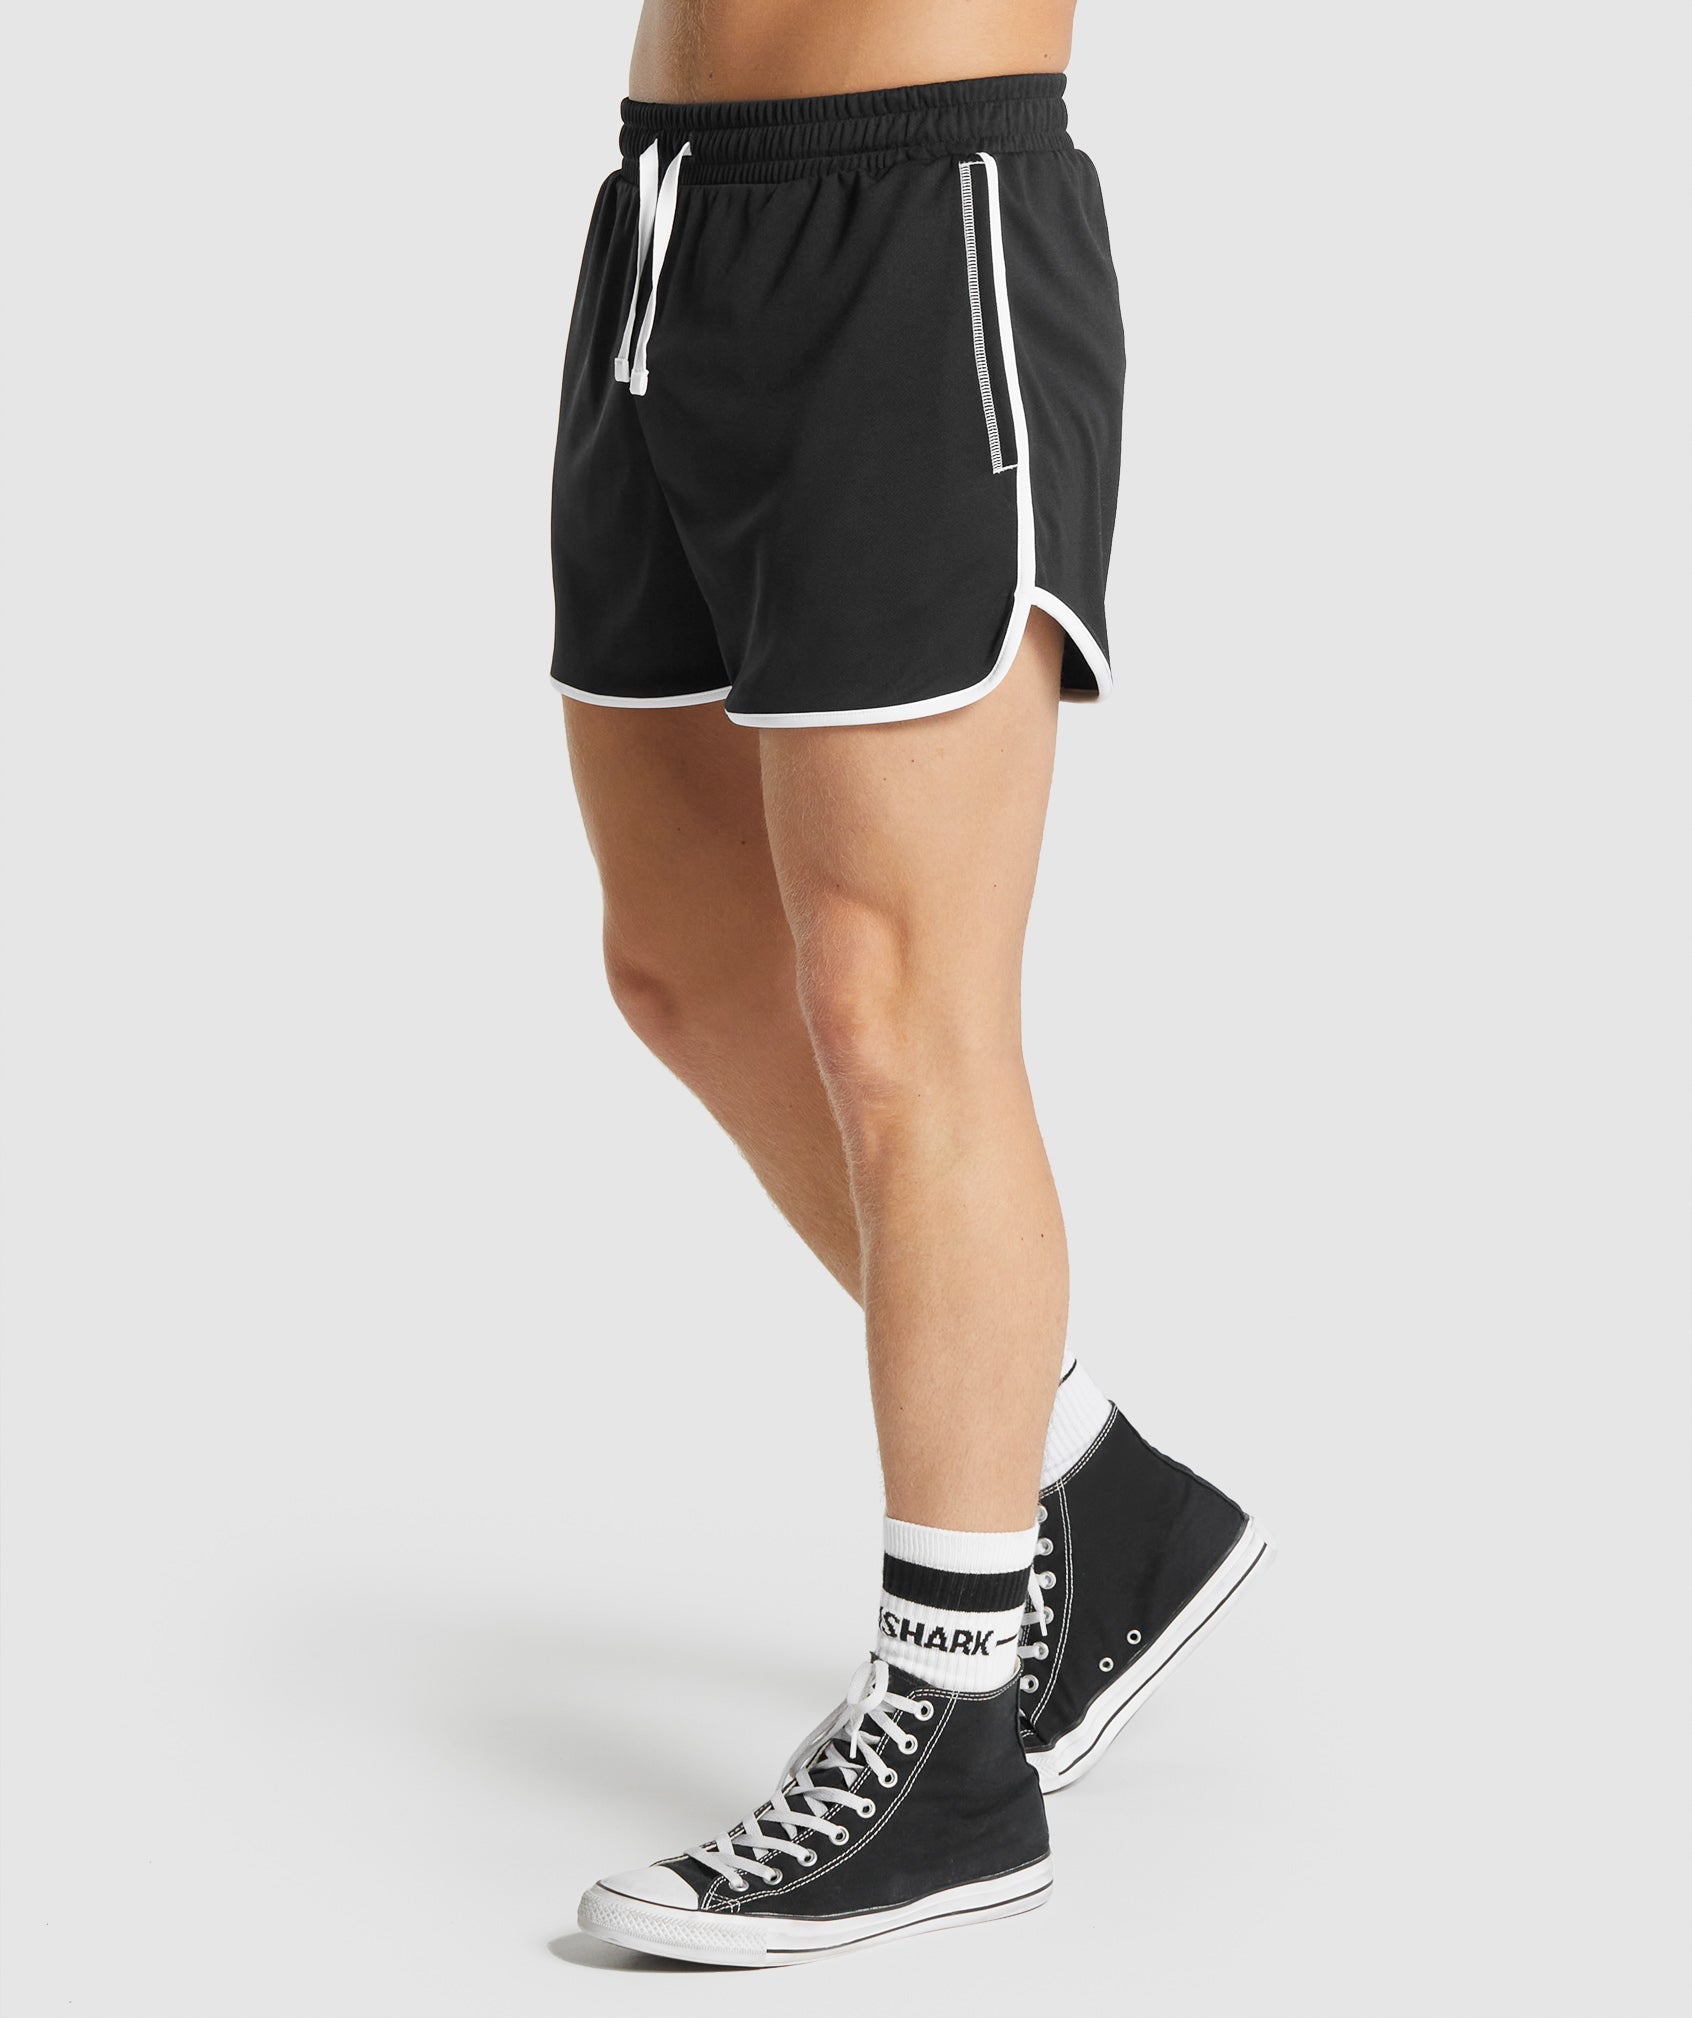 Recess 3" Quad Shorts in Black